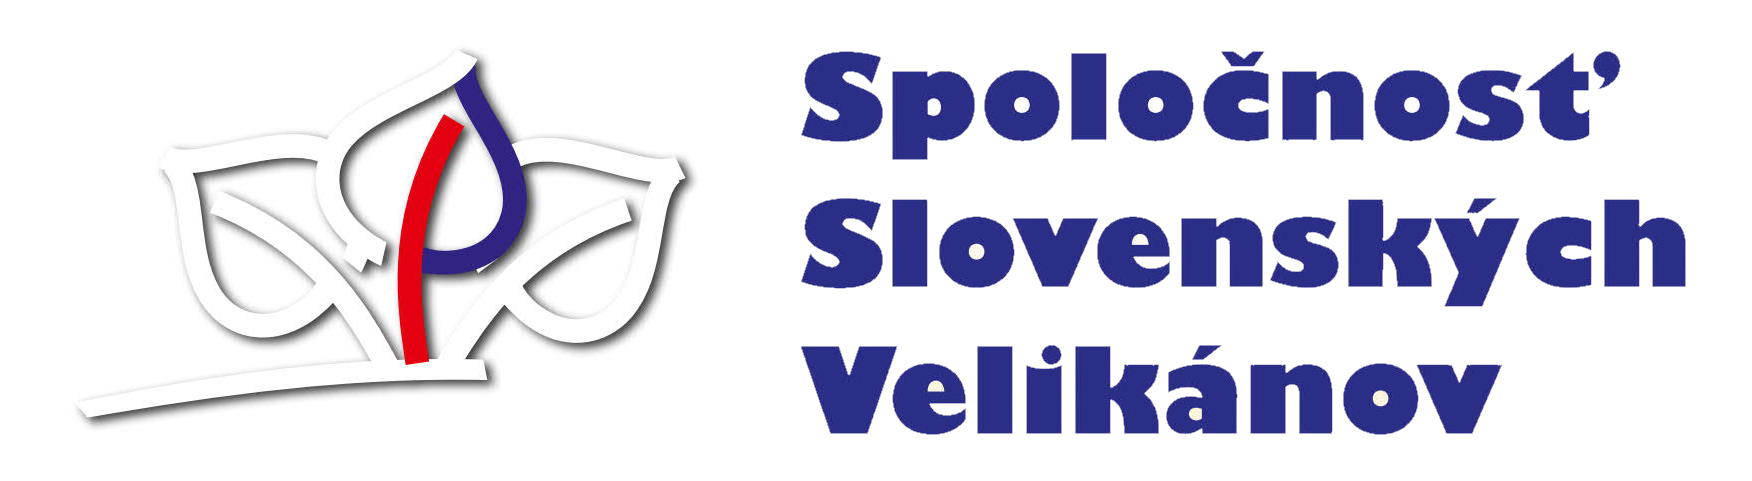 Spoločnosť slovenských velikánov